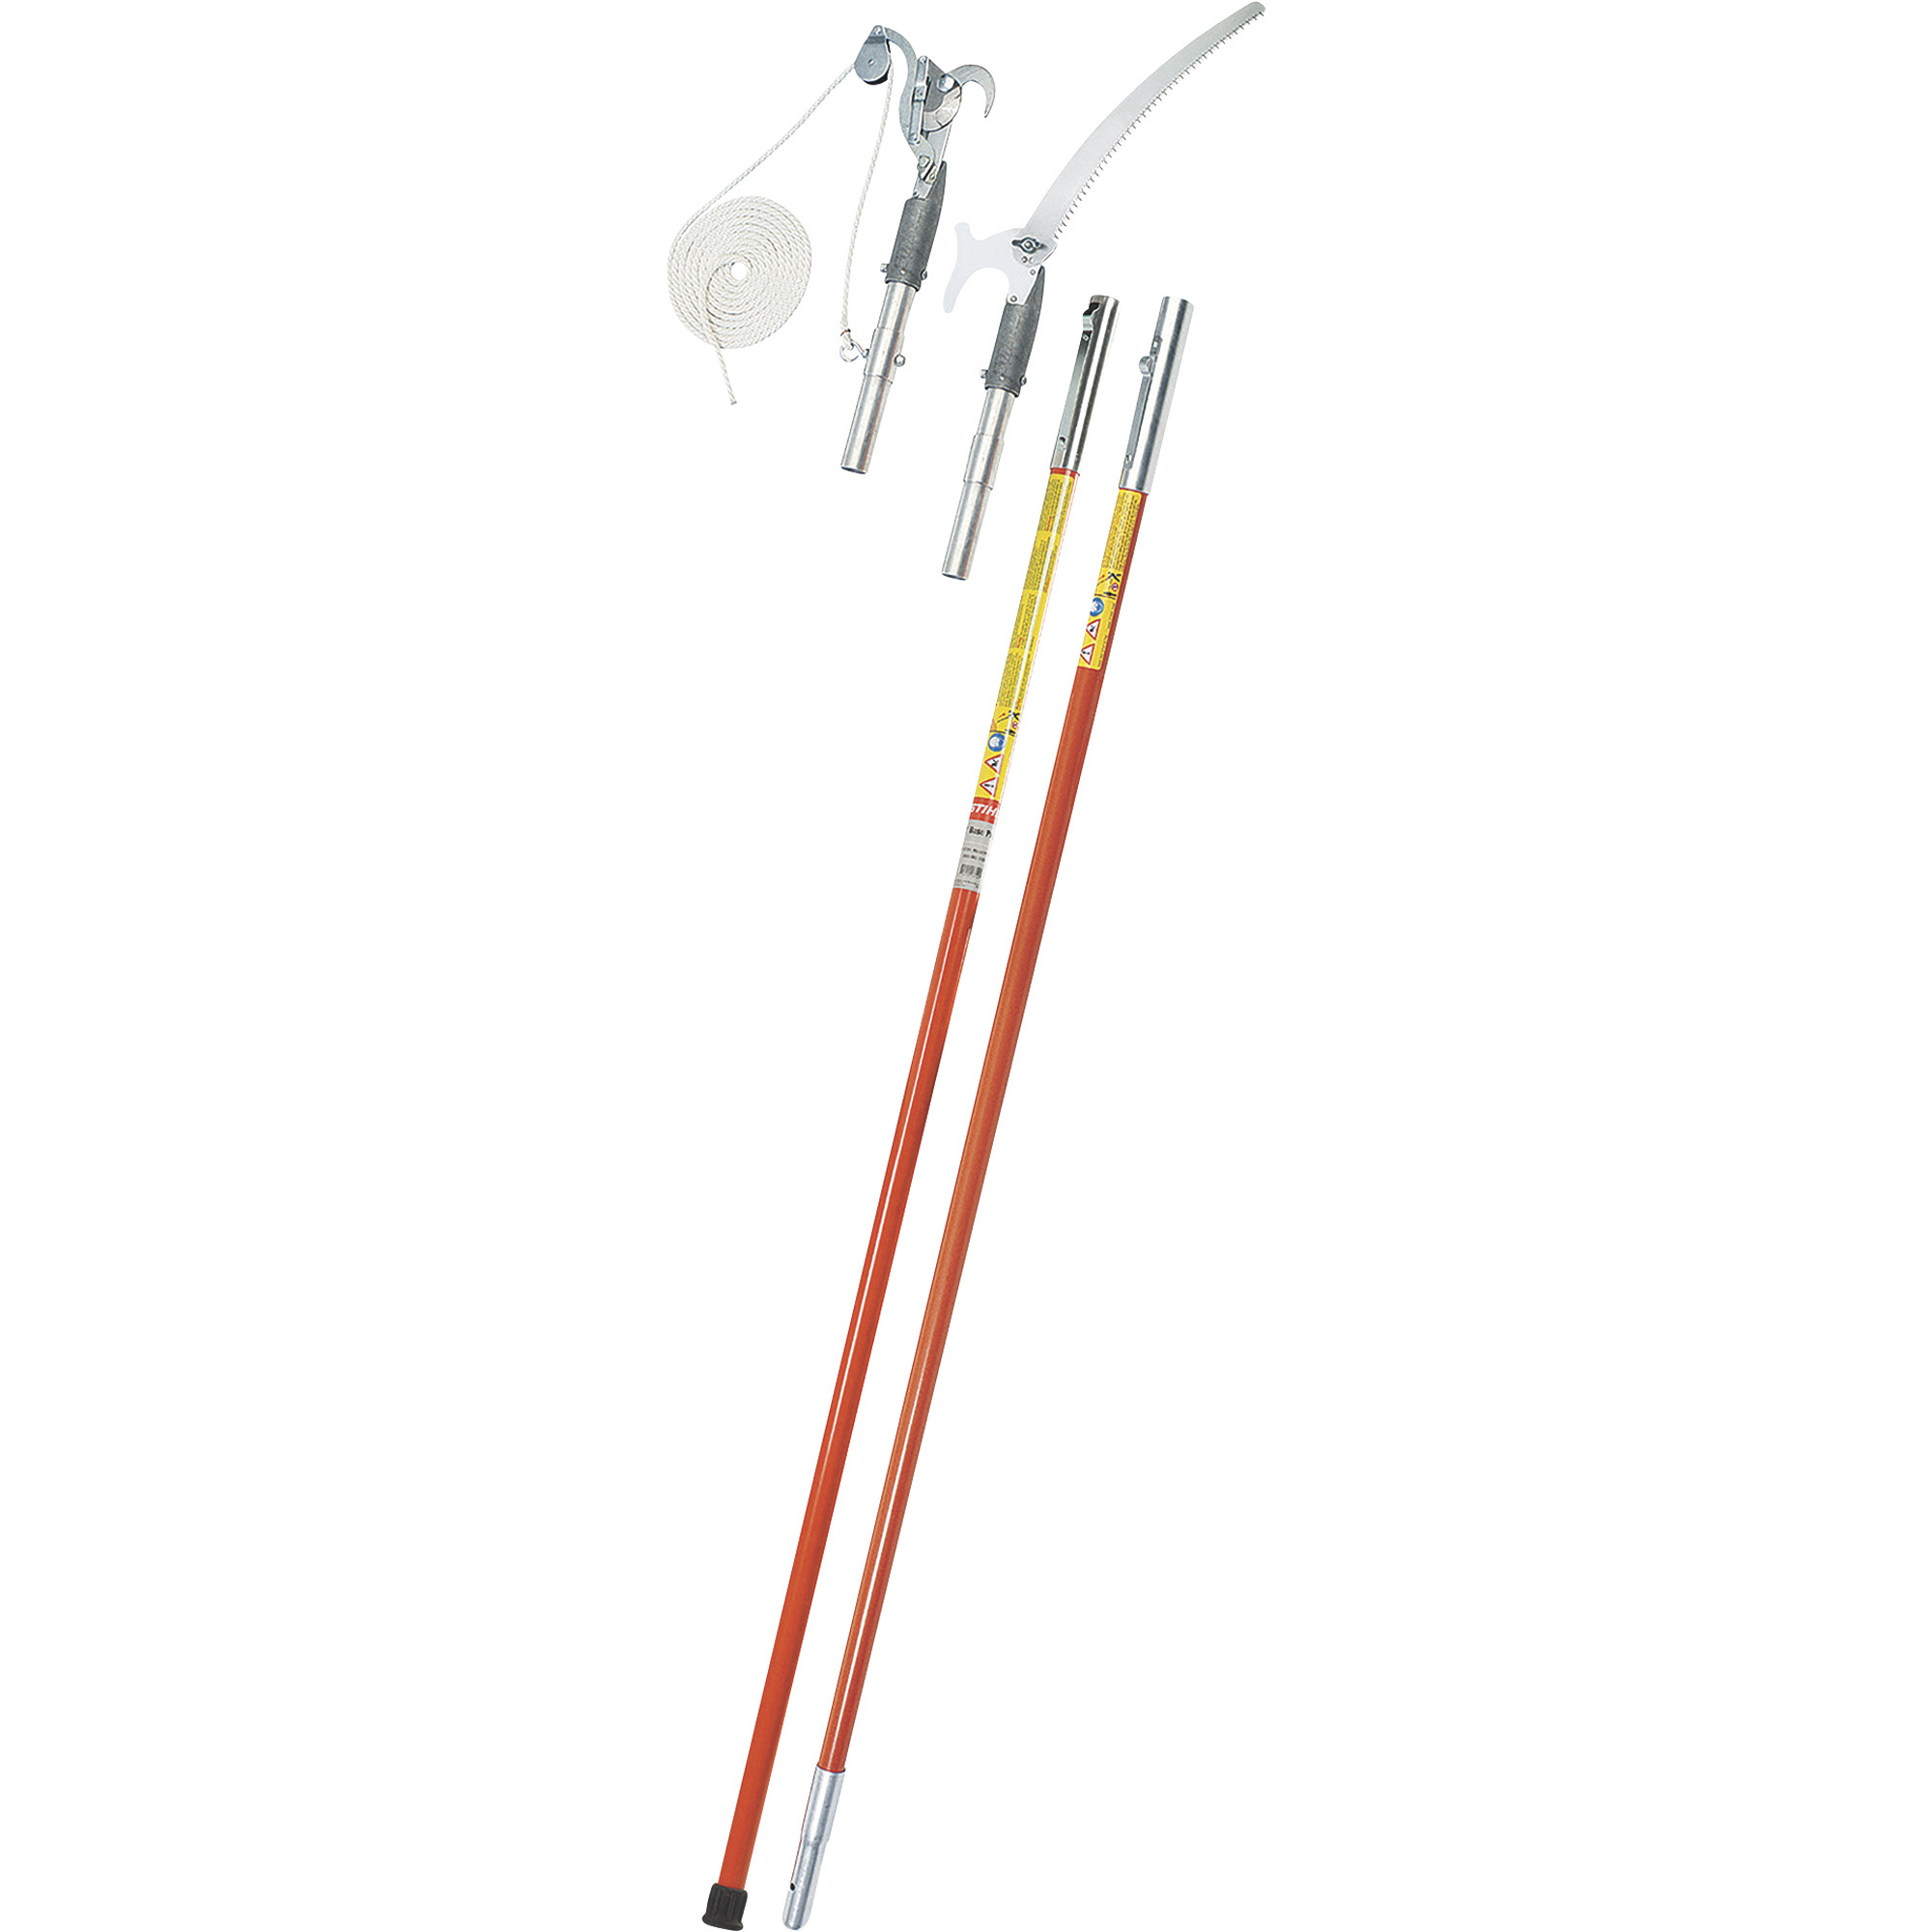 Stihl Precision Series Manual Pole Saw Set â 12ft.L, Model PP 900